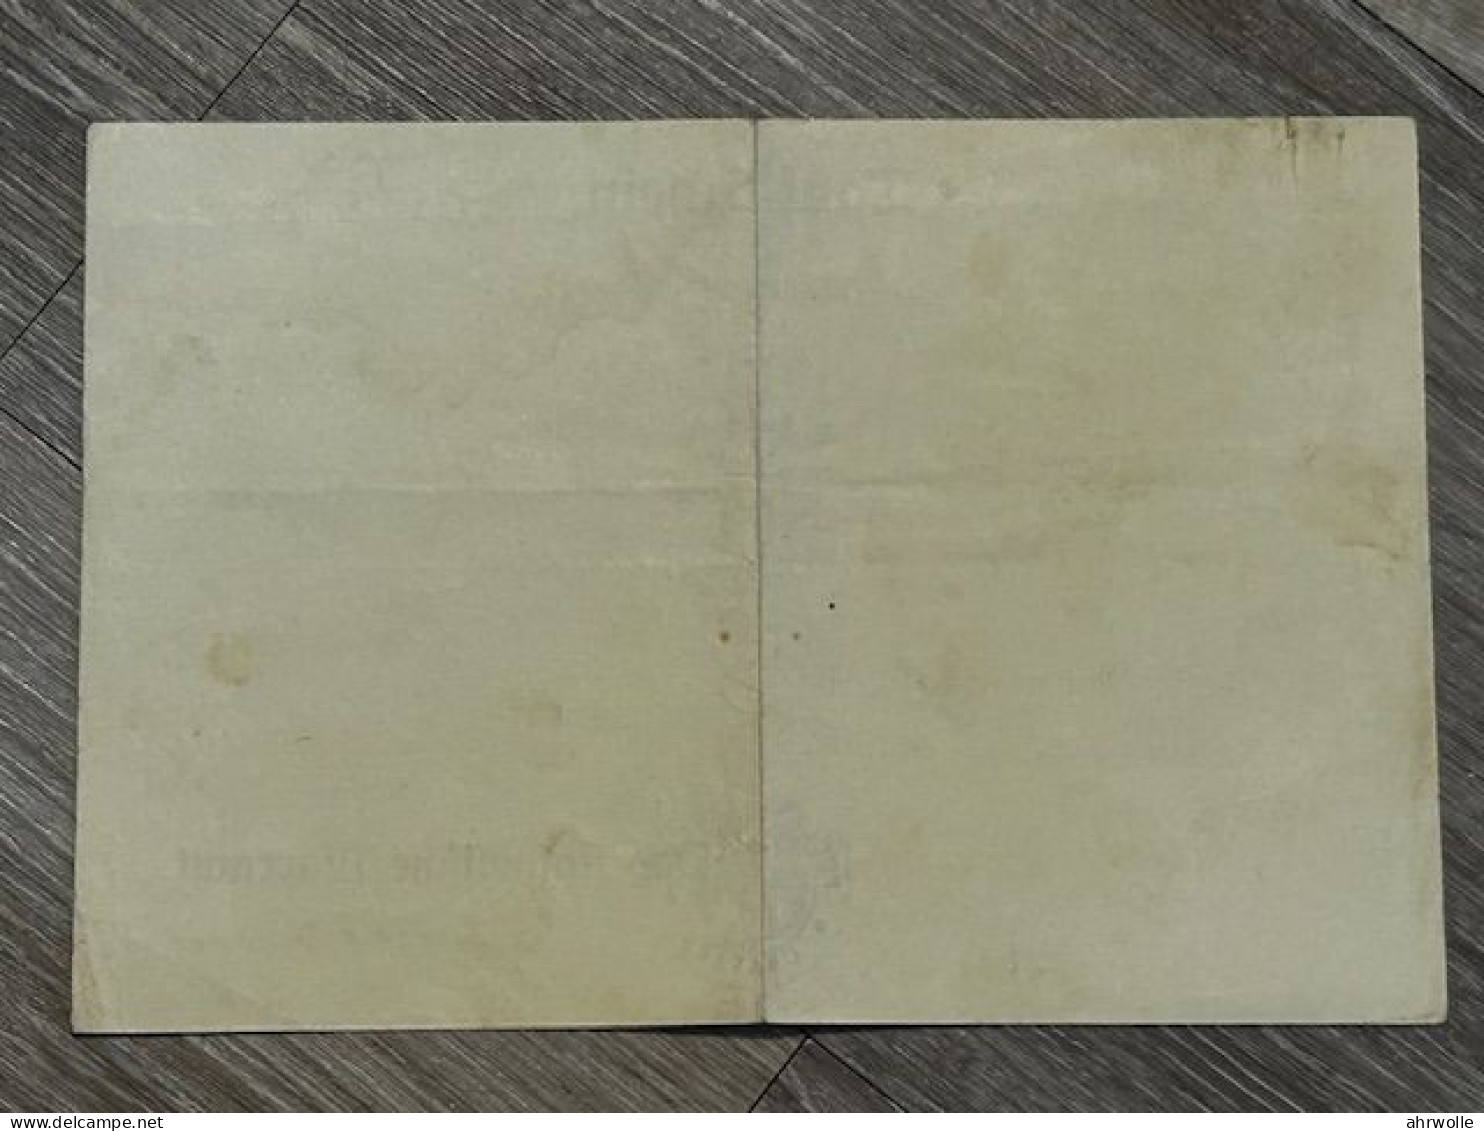 Dokument Urkunde Tauf Schein Deutsch Krawarn 1939 Mit Stempel Pfarramt Cravarn - Documents Historiques